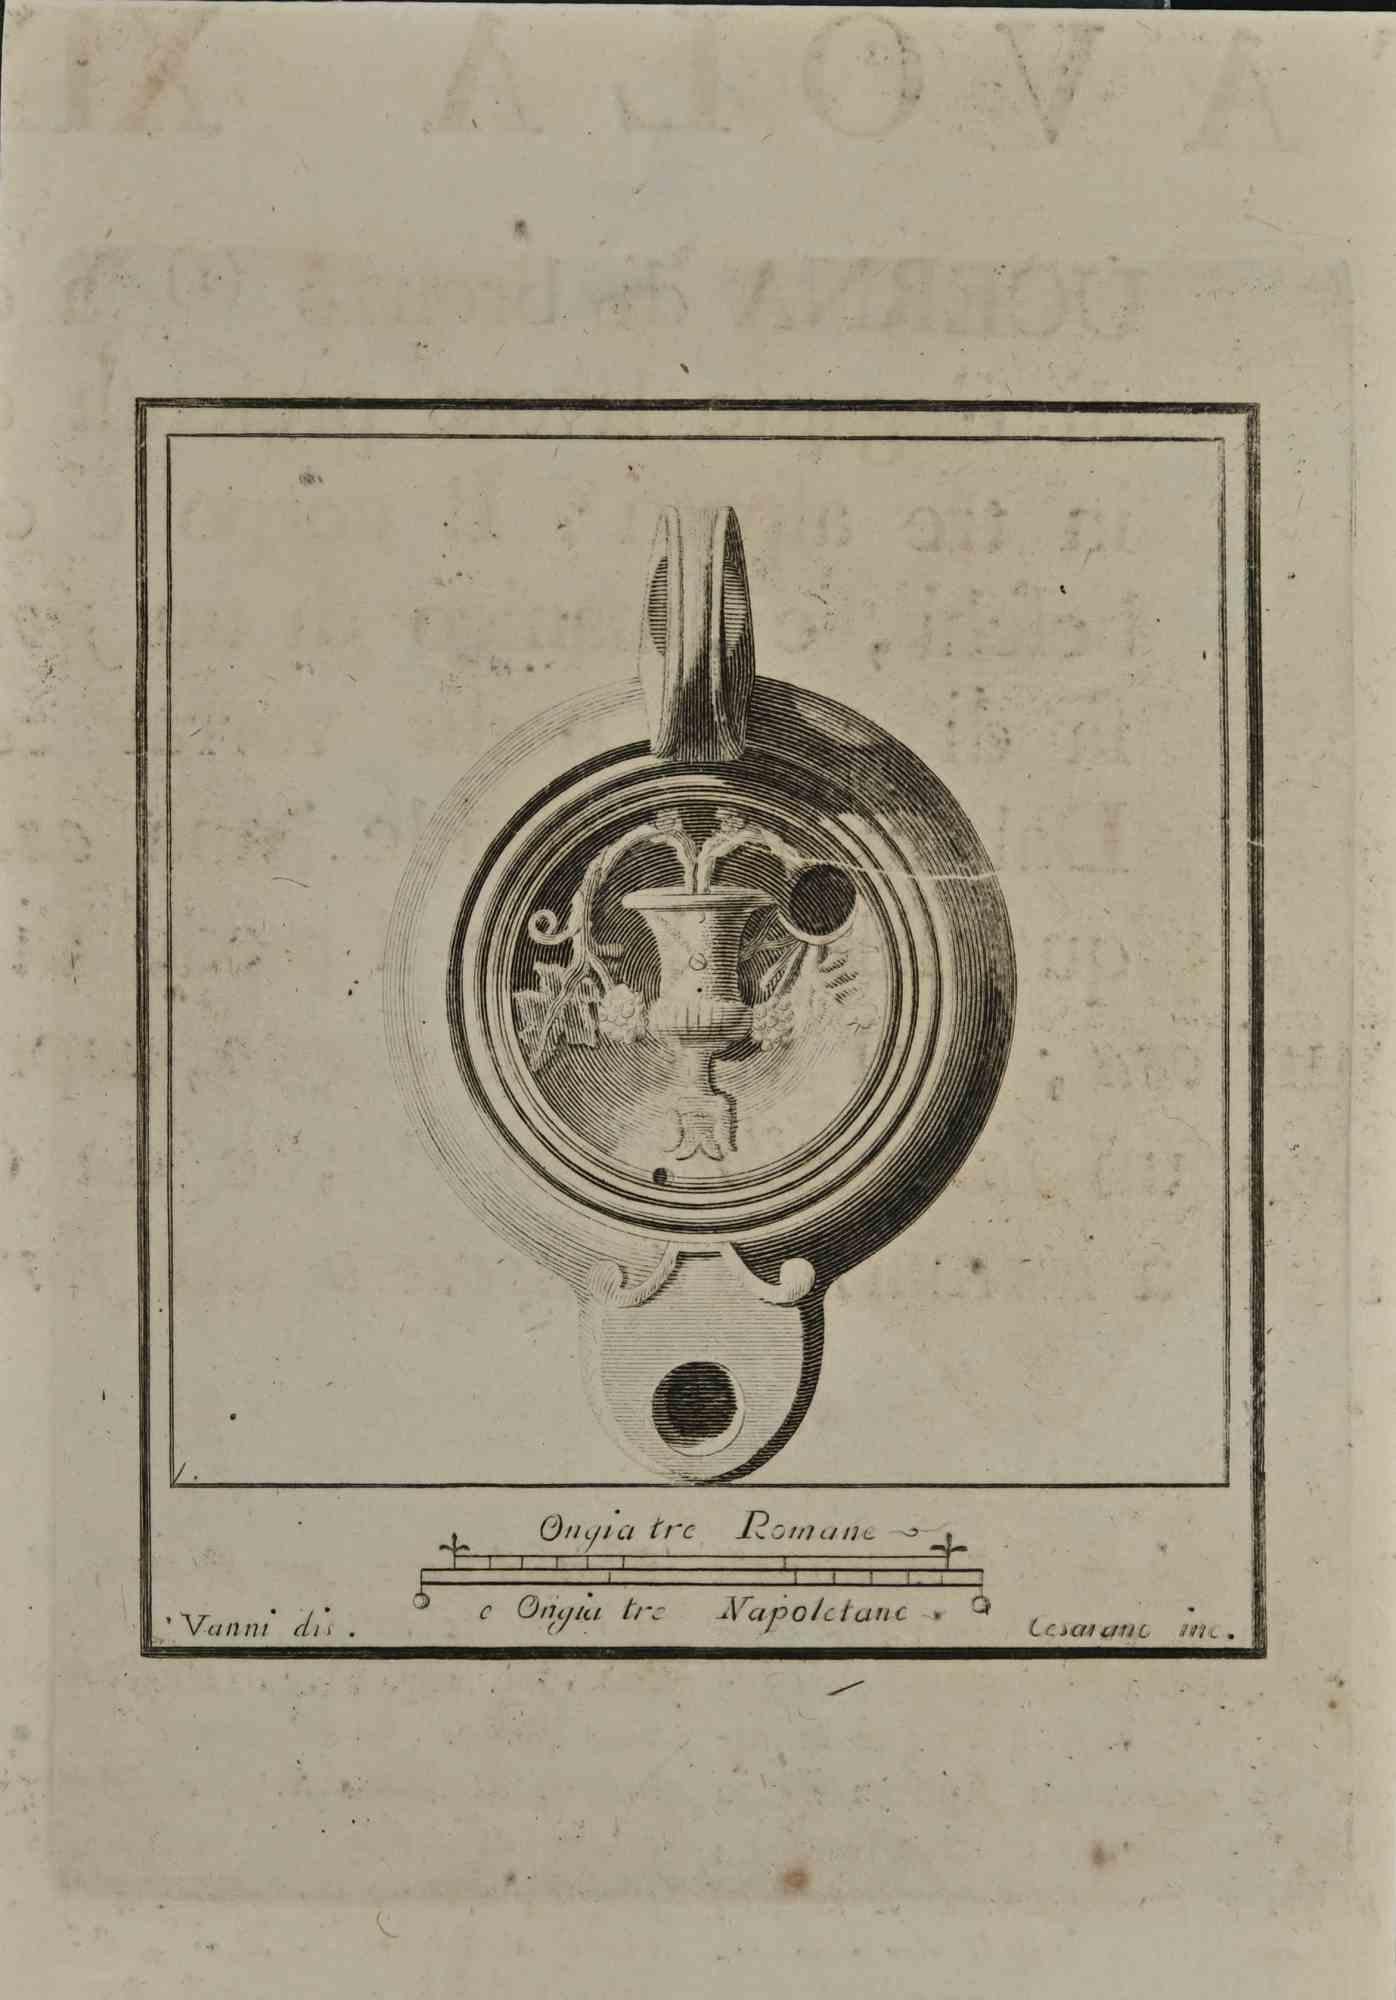 Nature morte de la série "Antiquités d'Herculanum", est une gravure sur papier réalisée par Carlo Cataneo au XVIIIe siècle.

Signé sur la plaque.

Bonnes conditions.

La gravure appartient à la suite d'estampes "Antiquités d'Herculanum exposées"